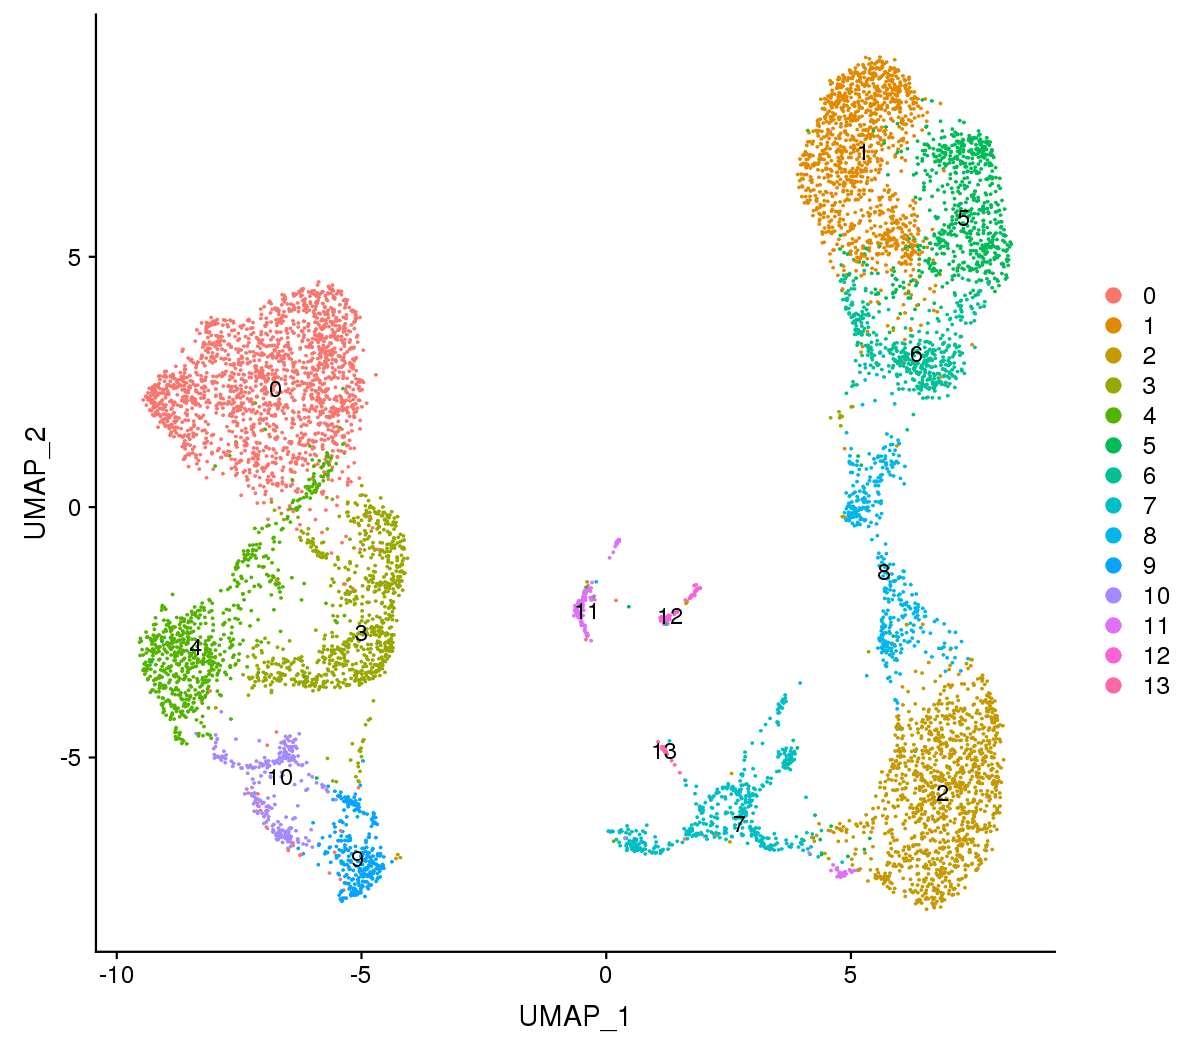 図1.1: シングルセル解析の結果